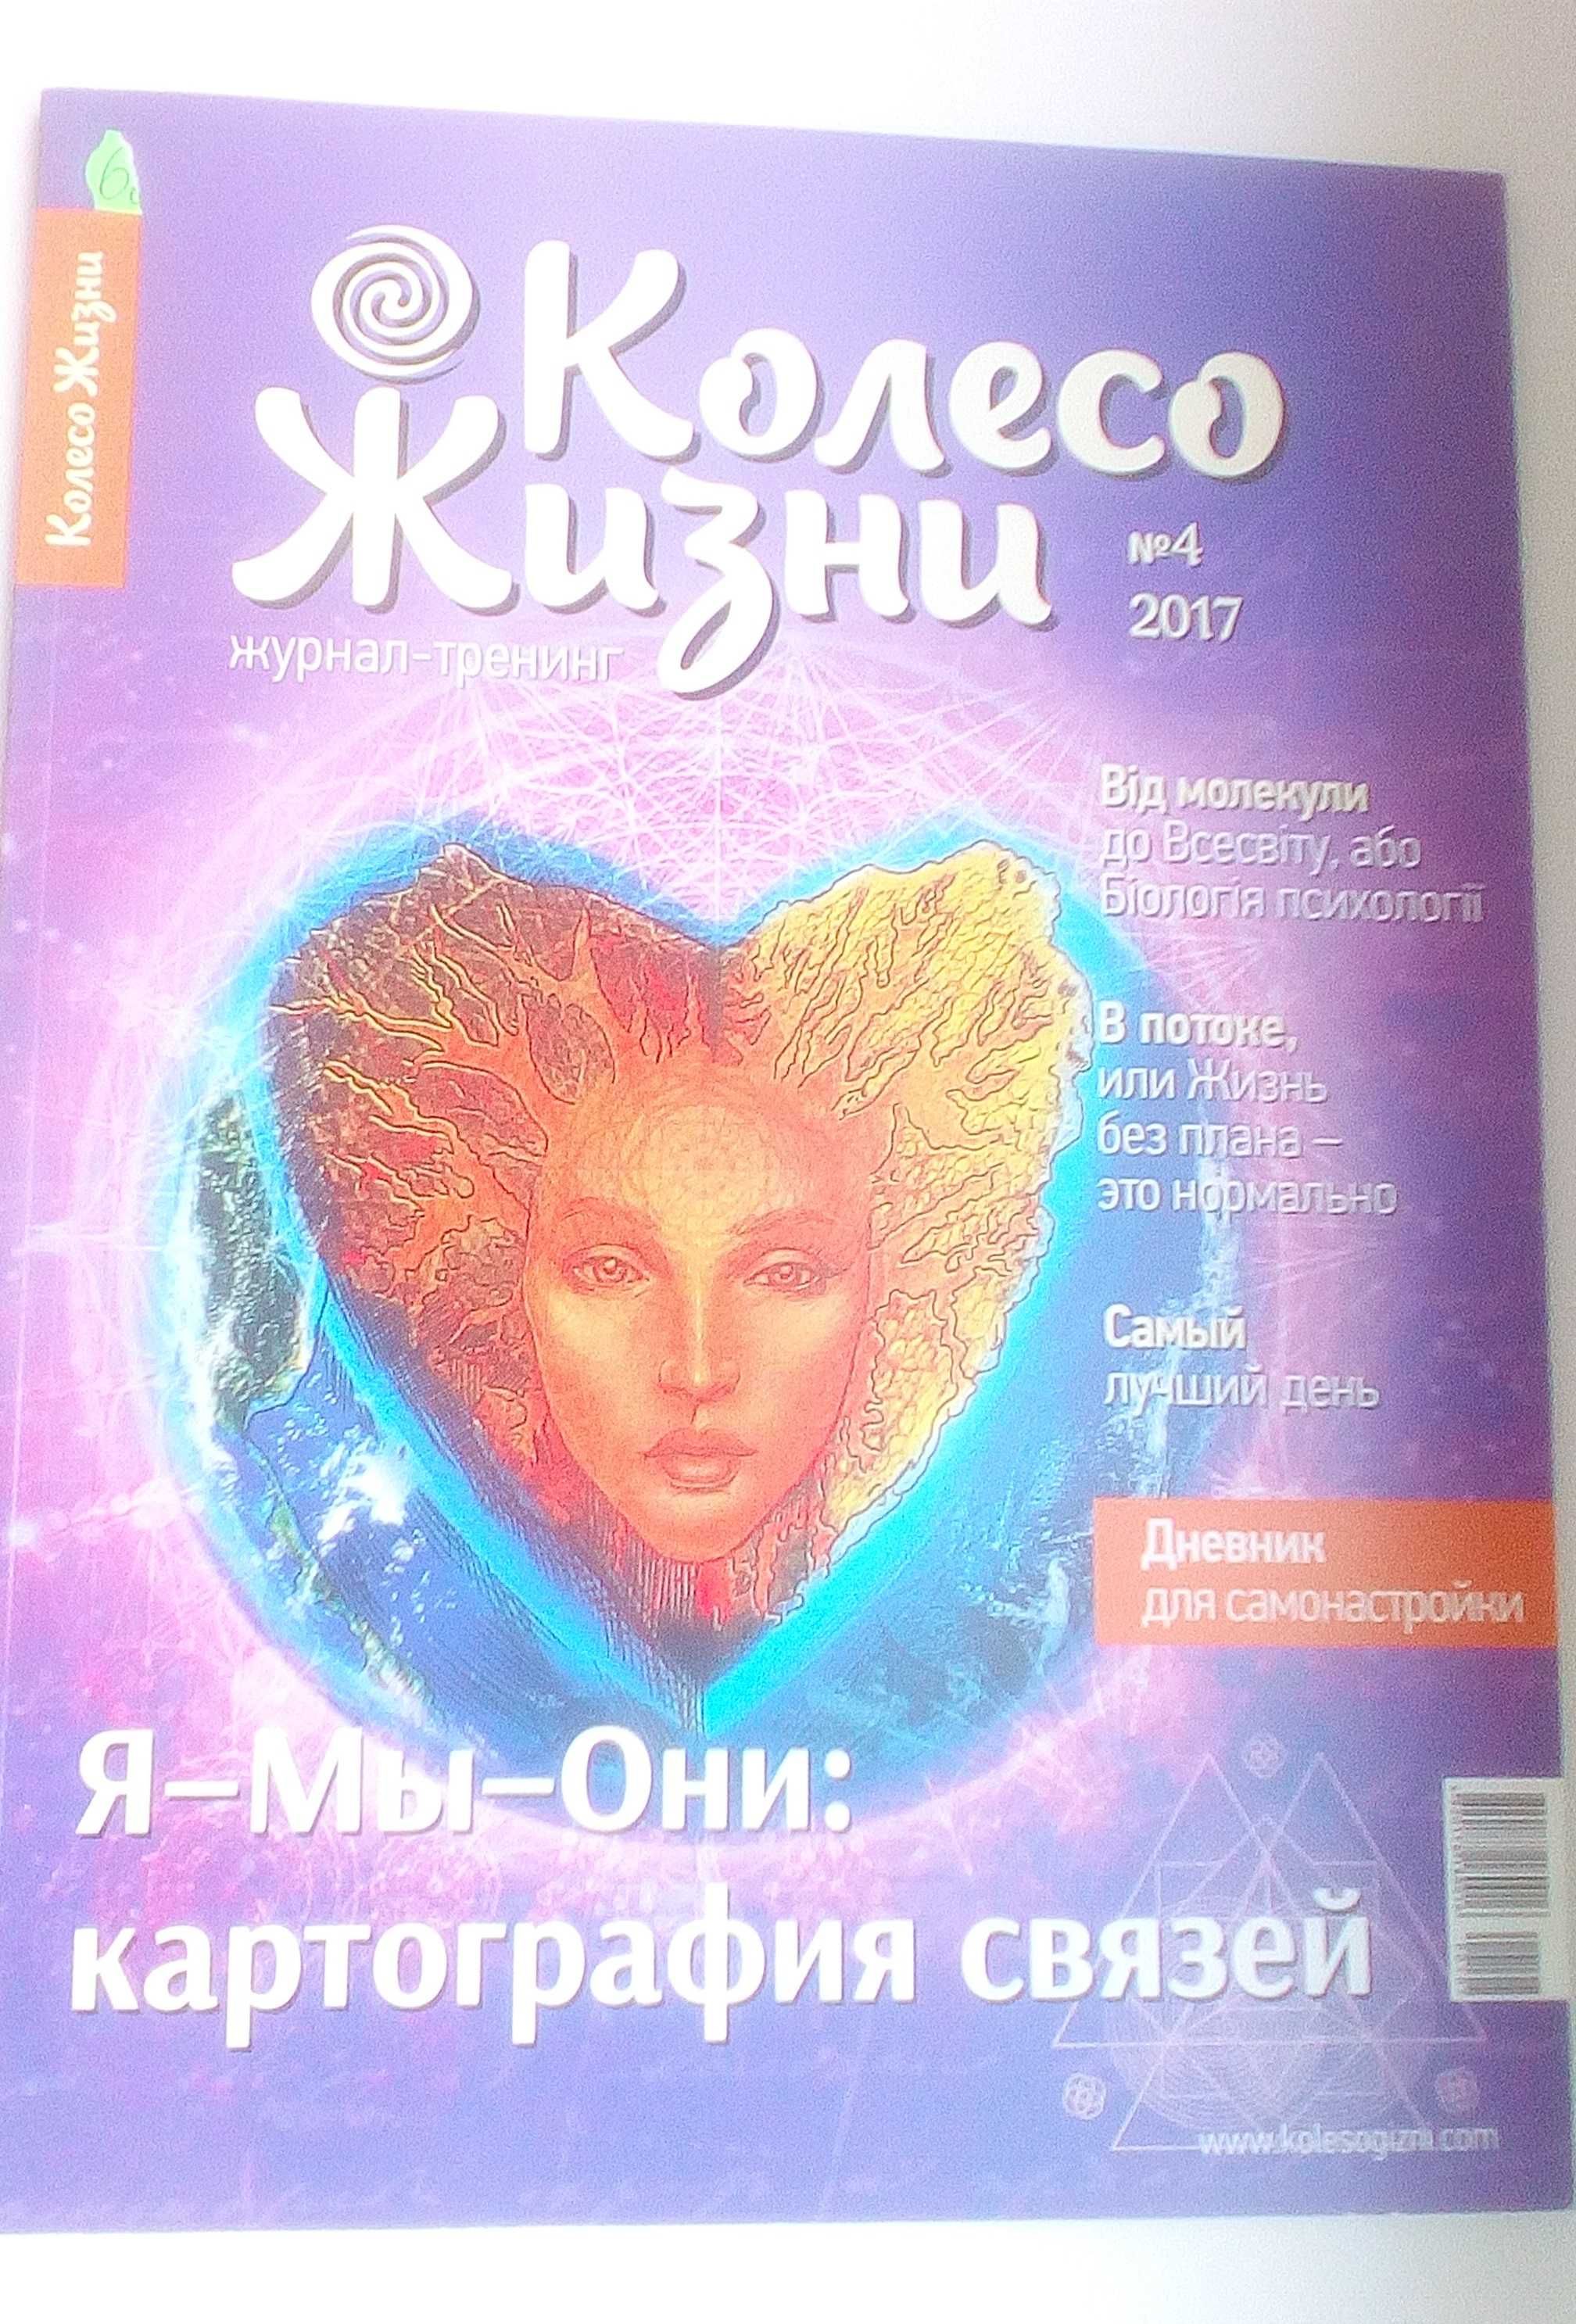 Журнал по психологии, мотивации Колесо жизни на русском